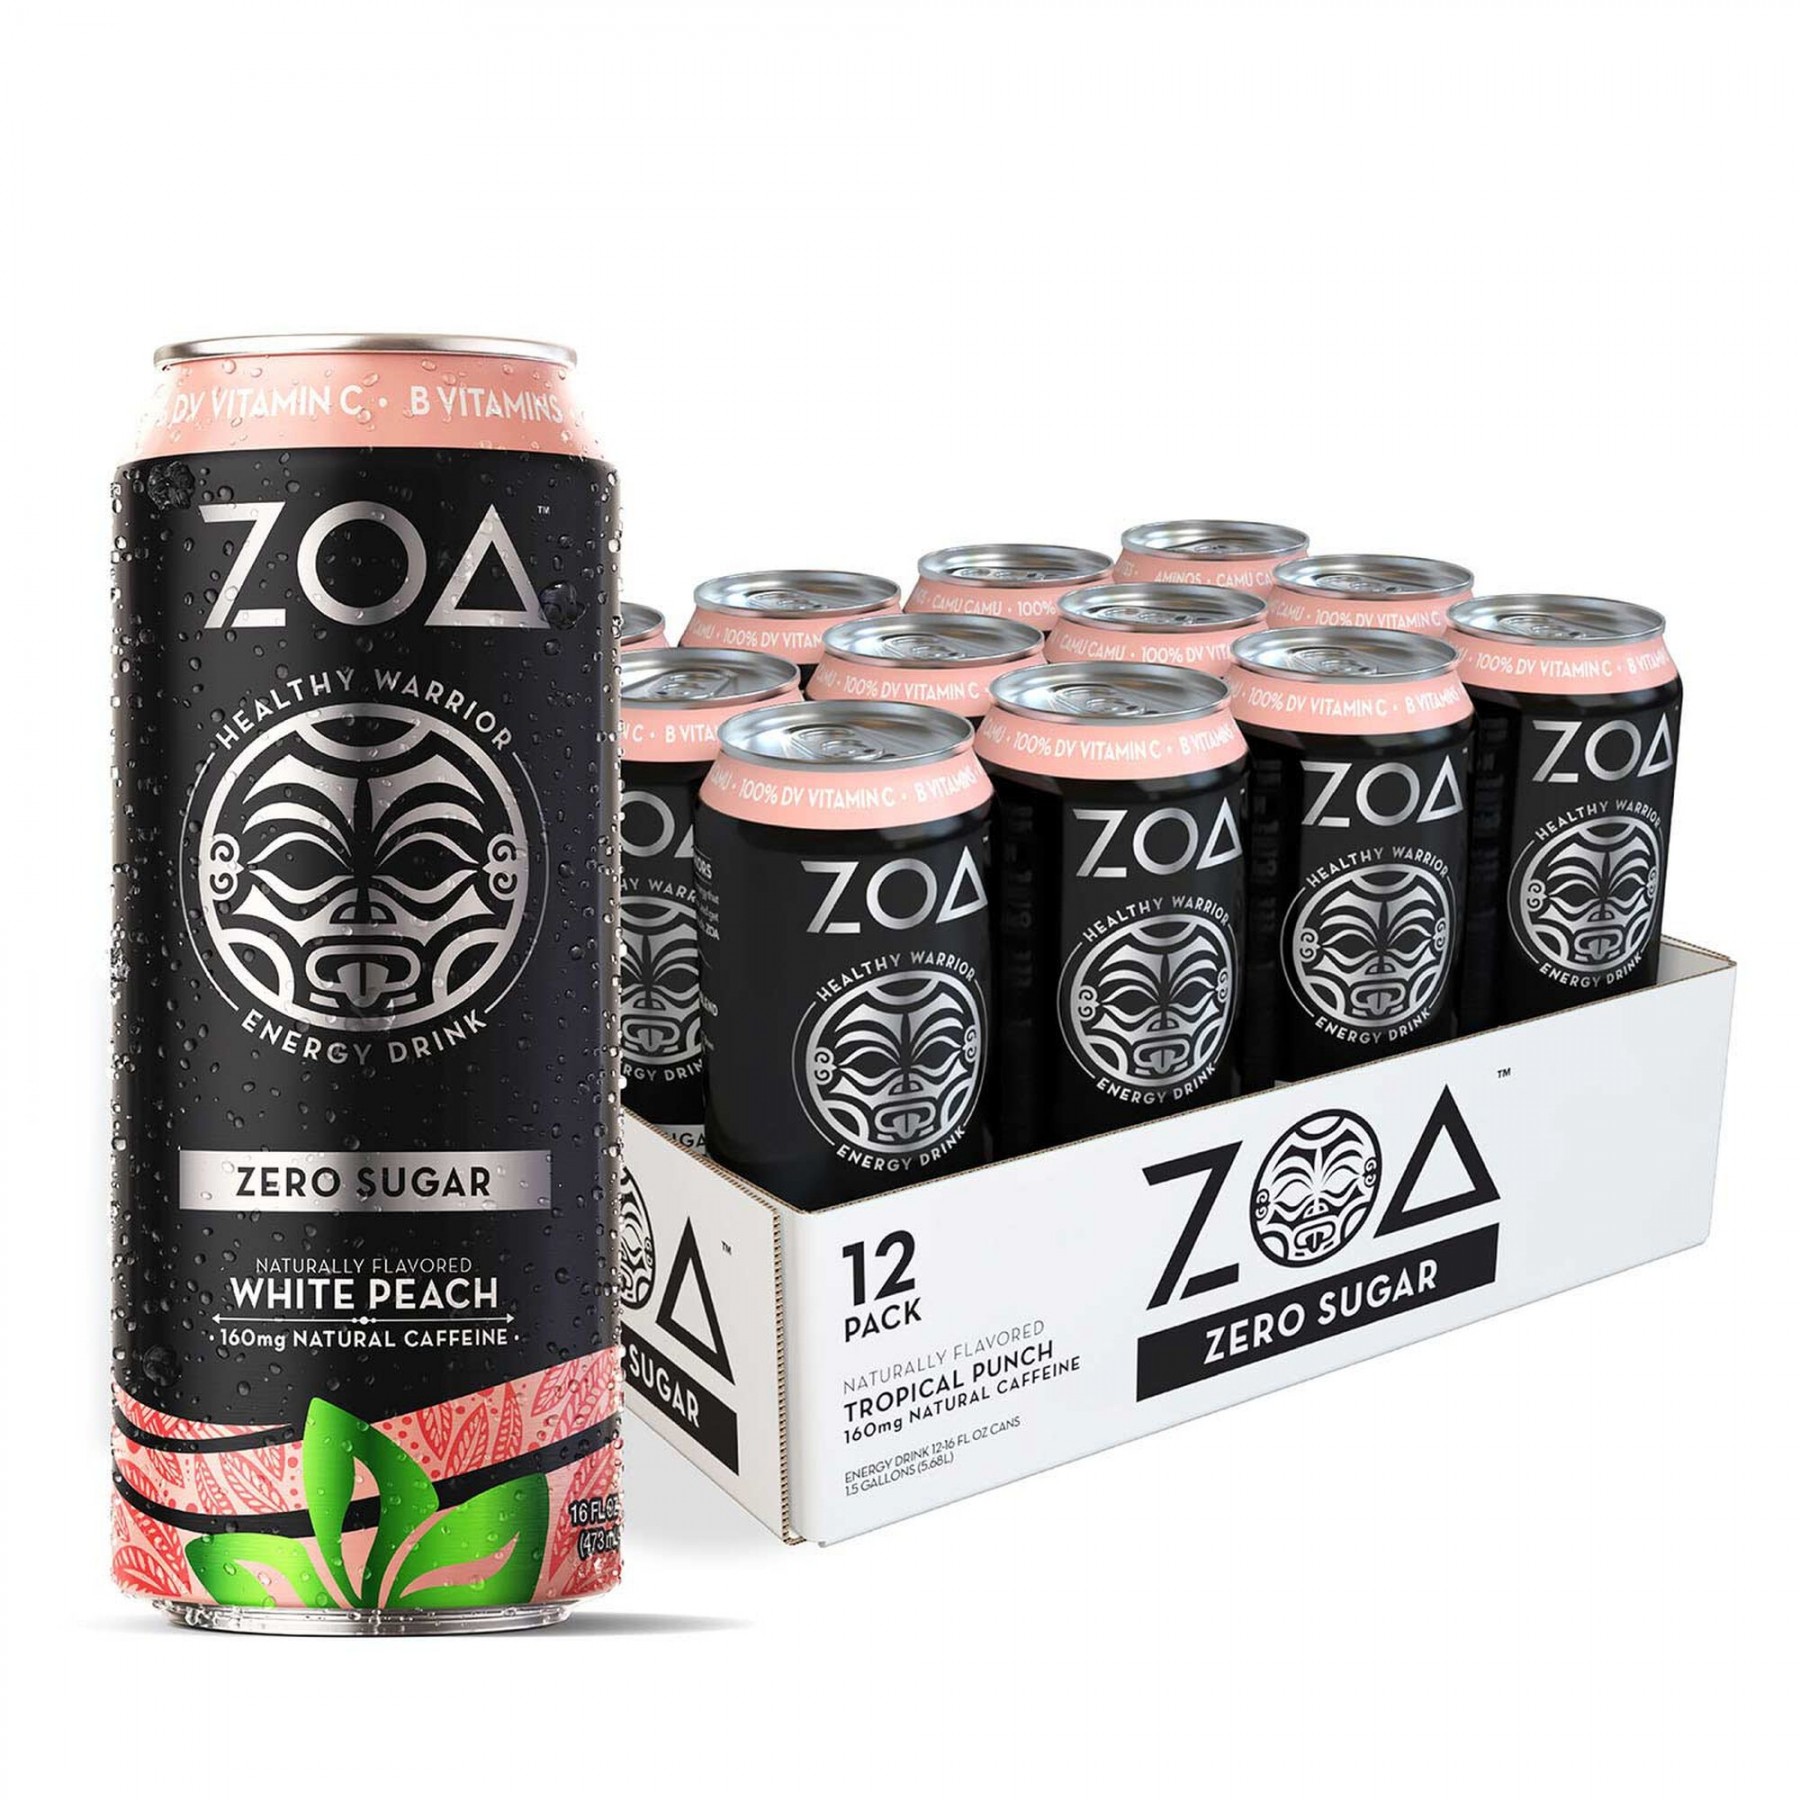 Preparate pentru efort (creșterea nivelului energetic) - ZOA Energy Drink, bautura energizanta FARA ZAHAR, aroma de piersica alba, 473 ml, GNC, farmaciamare.ro